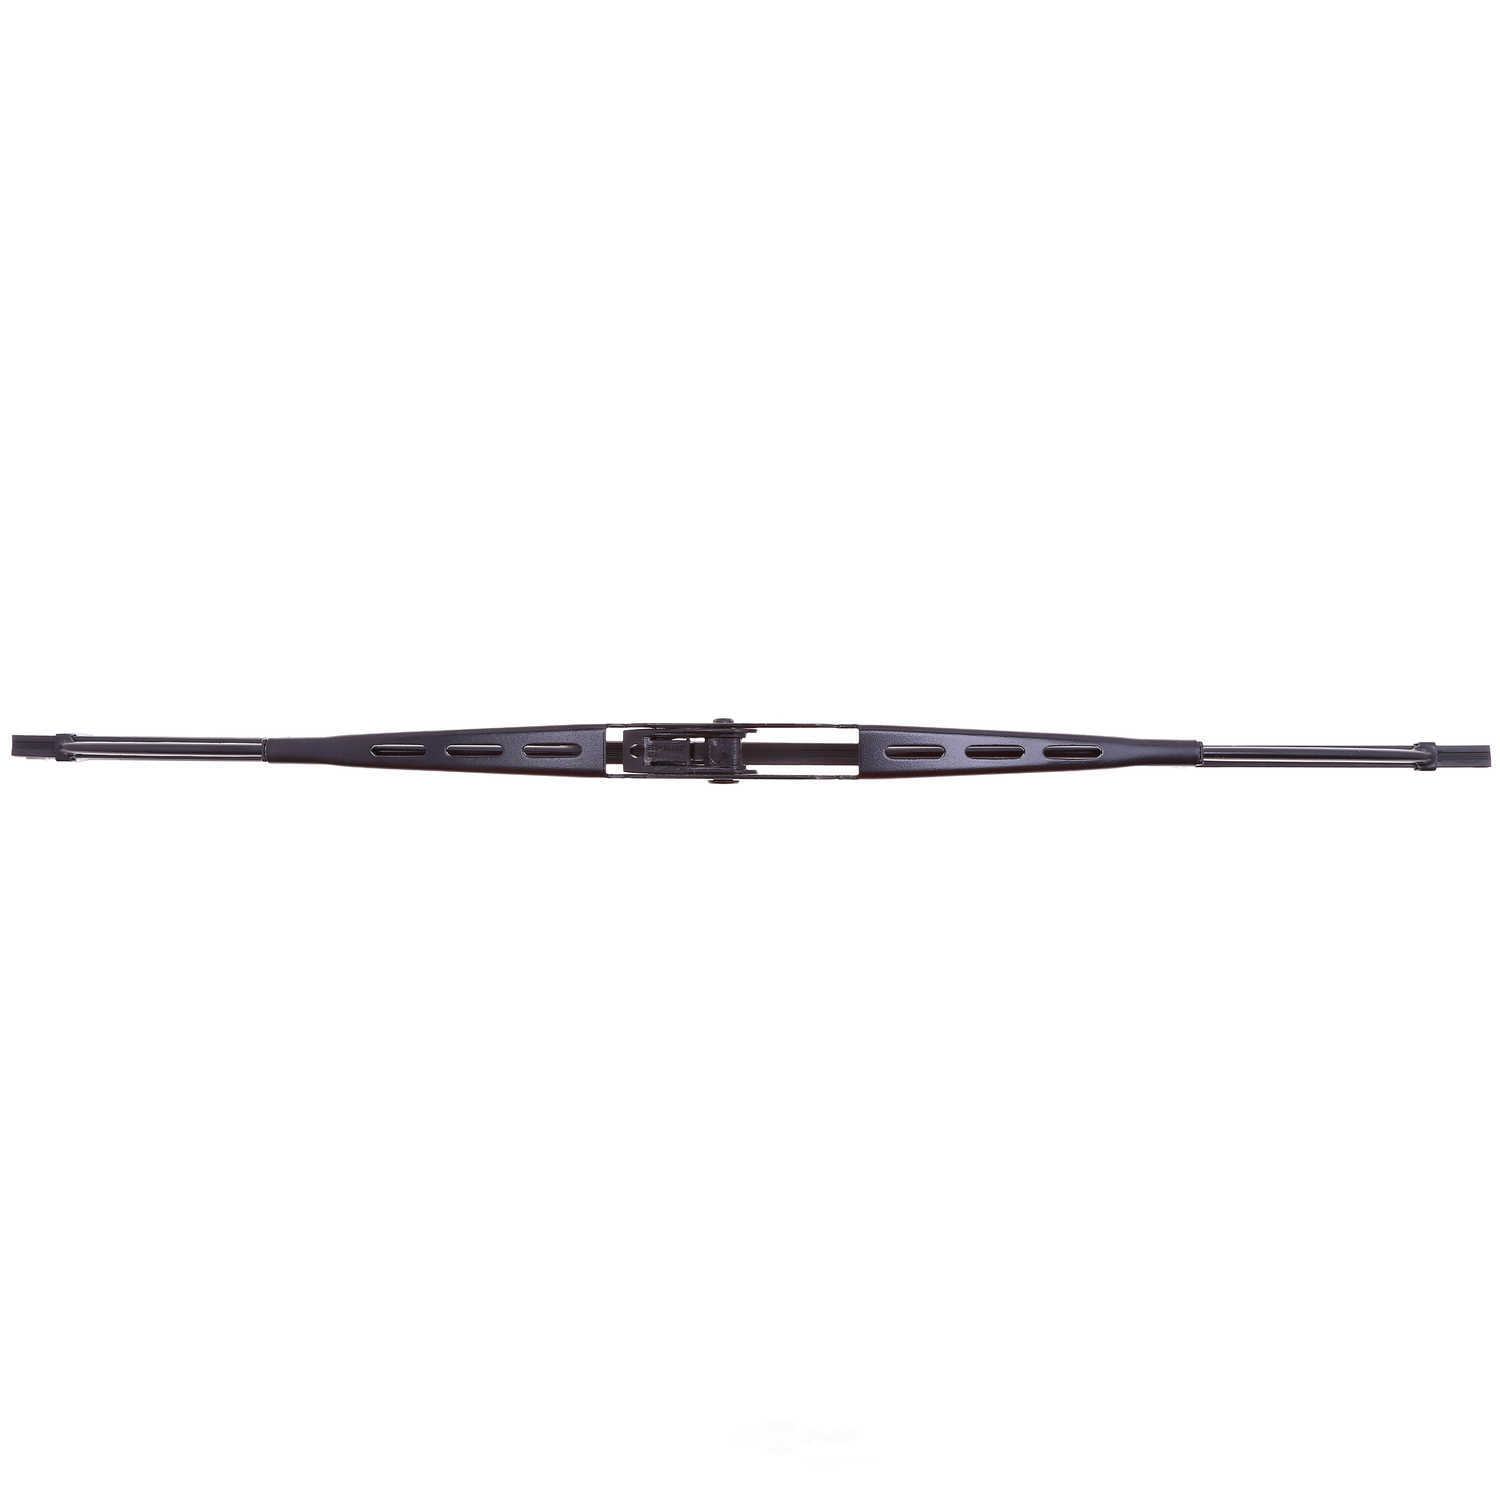 ANCO WIPER PRODUCTS - ANCO 14-Series Wiper Blade - ANC 14C-15